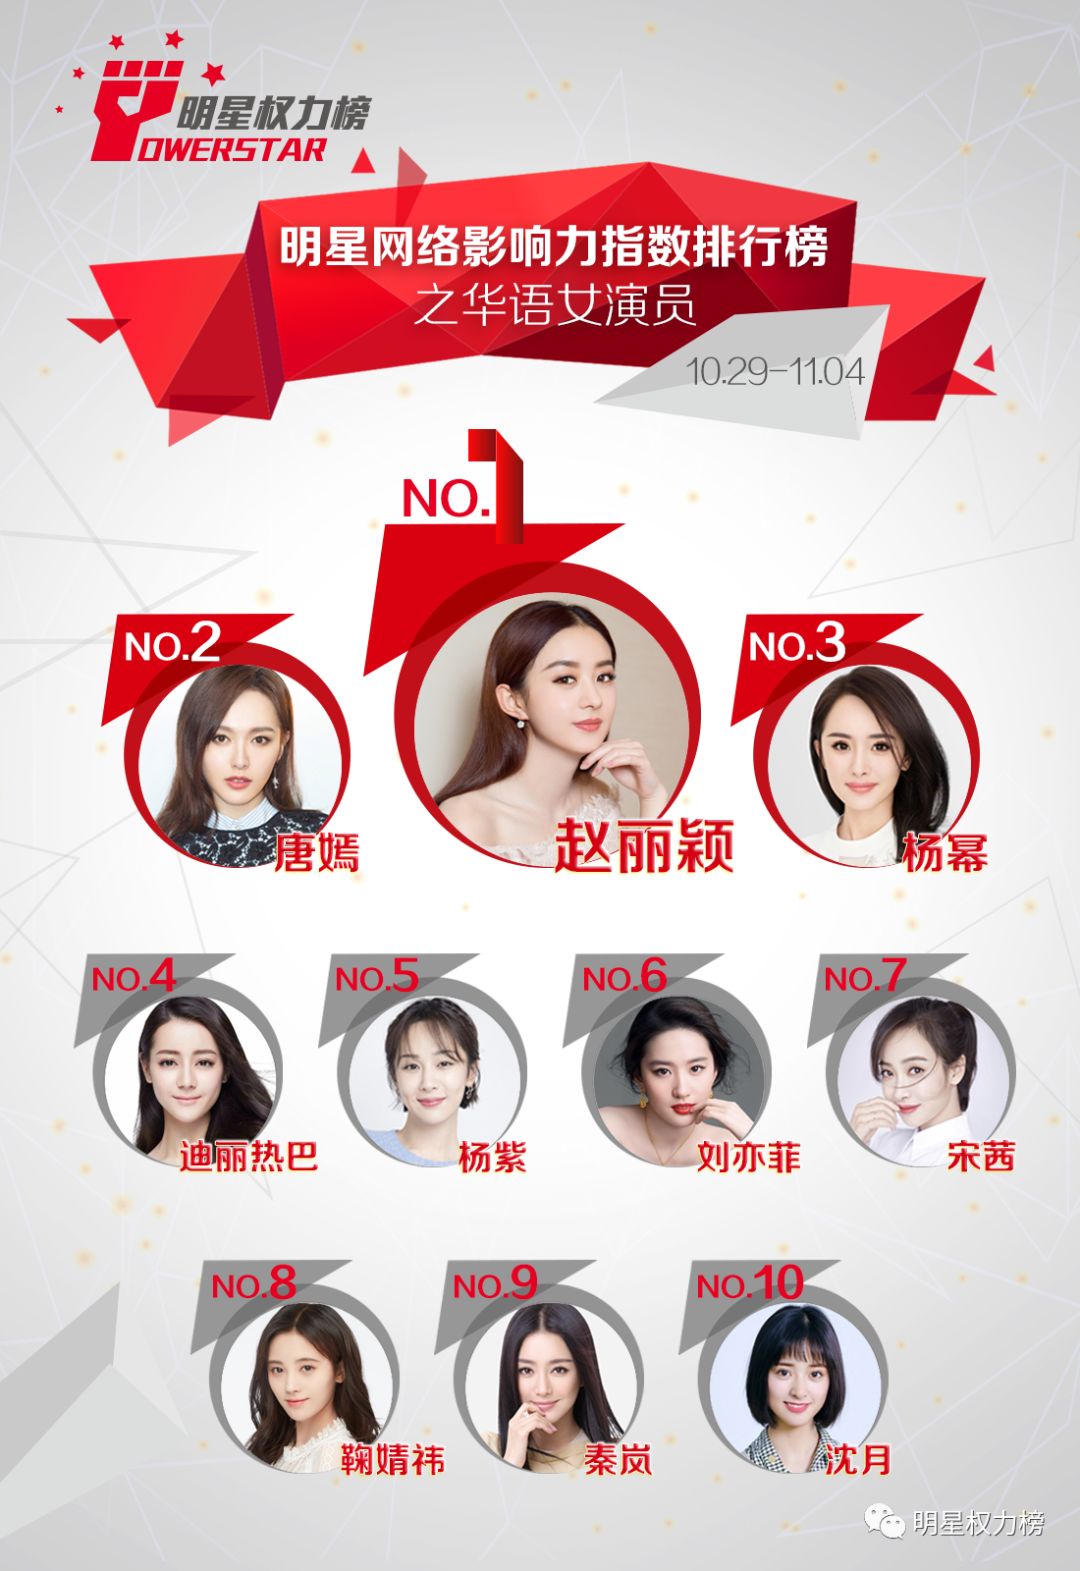 明星网络影响力指数排行榜第181期榜单之华语女演员Top10